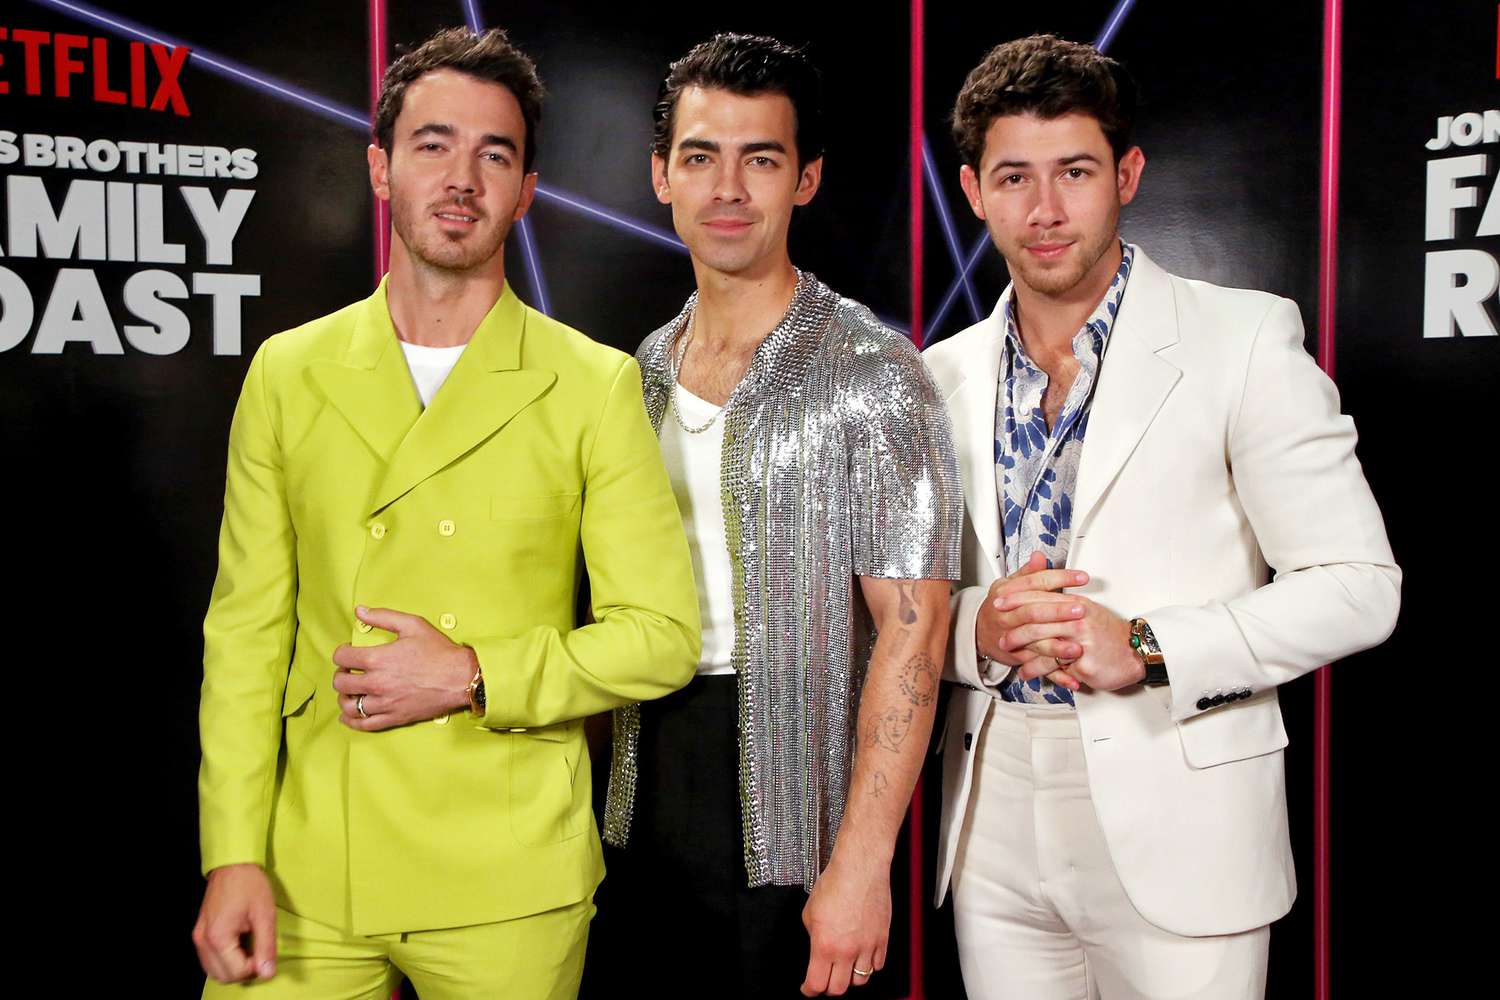 Brothers roast jonas family 'Jonas Brothers: